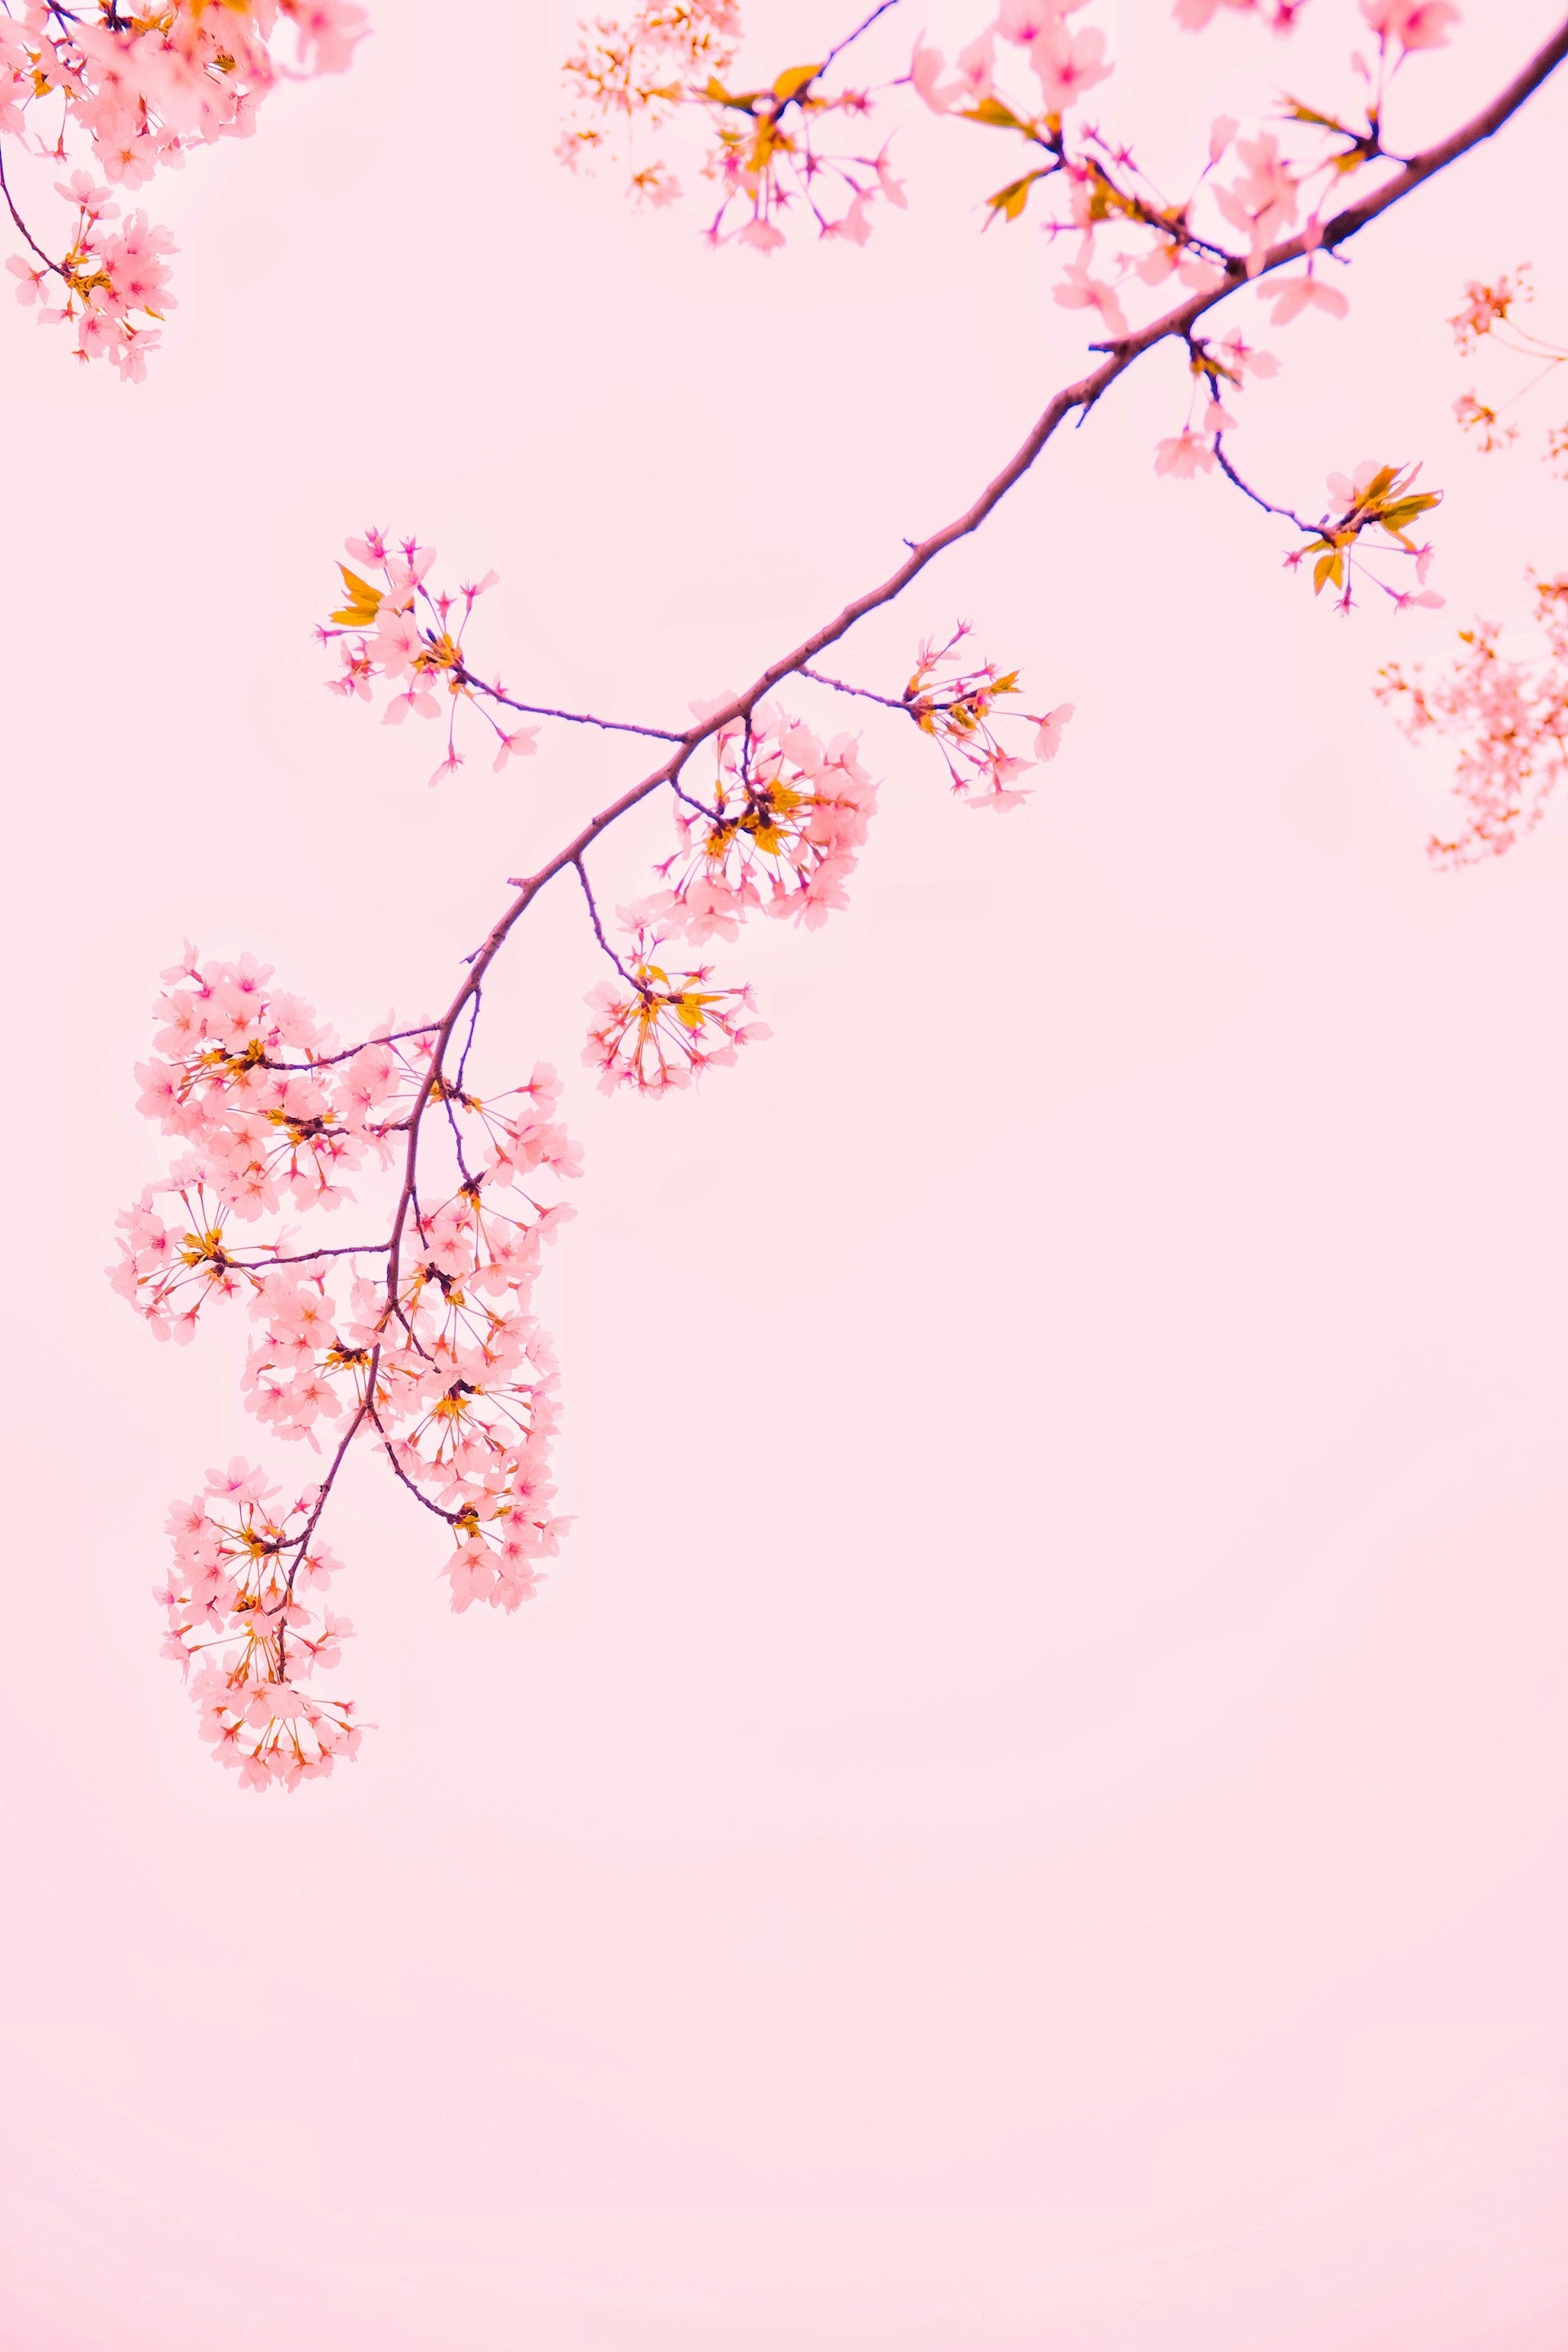 淡いピンクの背景に満開の花が咲いた桜の枝が右上から左下にむかって垂れている様子がうつっています。下記は関連するキーワードになります。春 春ギフト 入学 卒業 入園 卒園 進学 昇進 新社会人 新生活 応援 お祝い 感謝 プレゼント 上質 日本製 挨拶 ハンカチ タオル 松久永助紙店 オンラインショップ